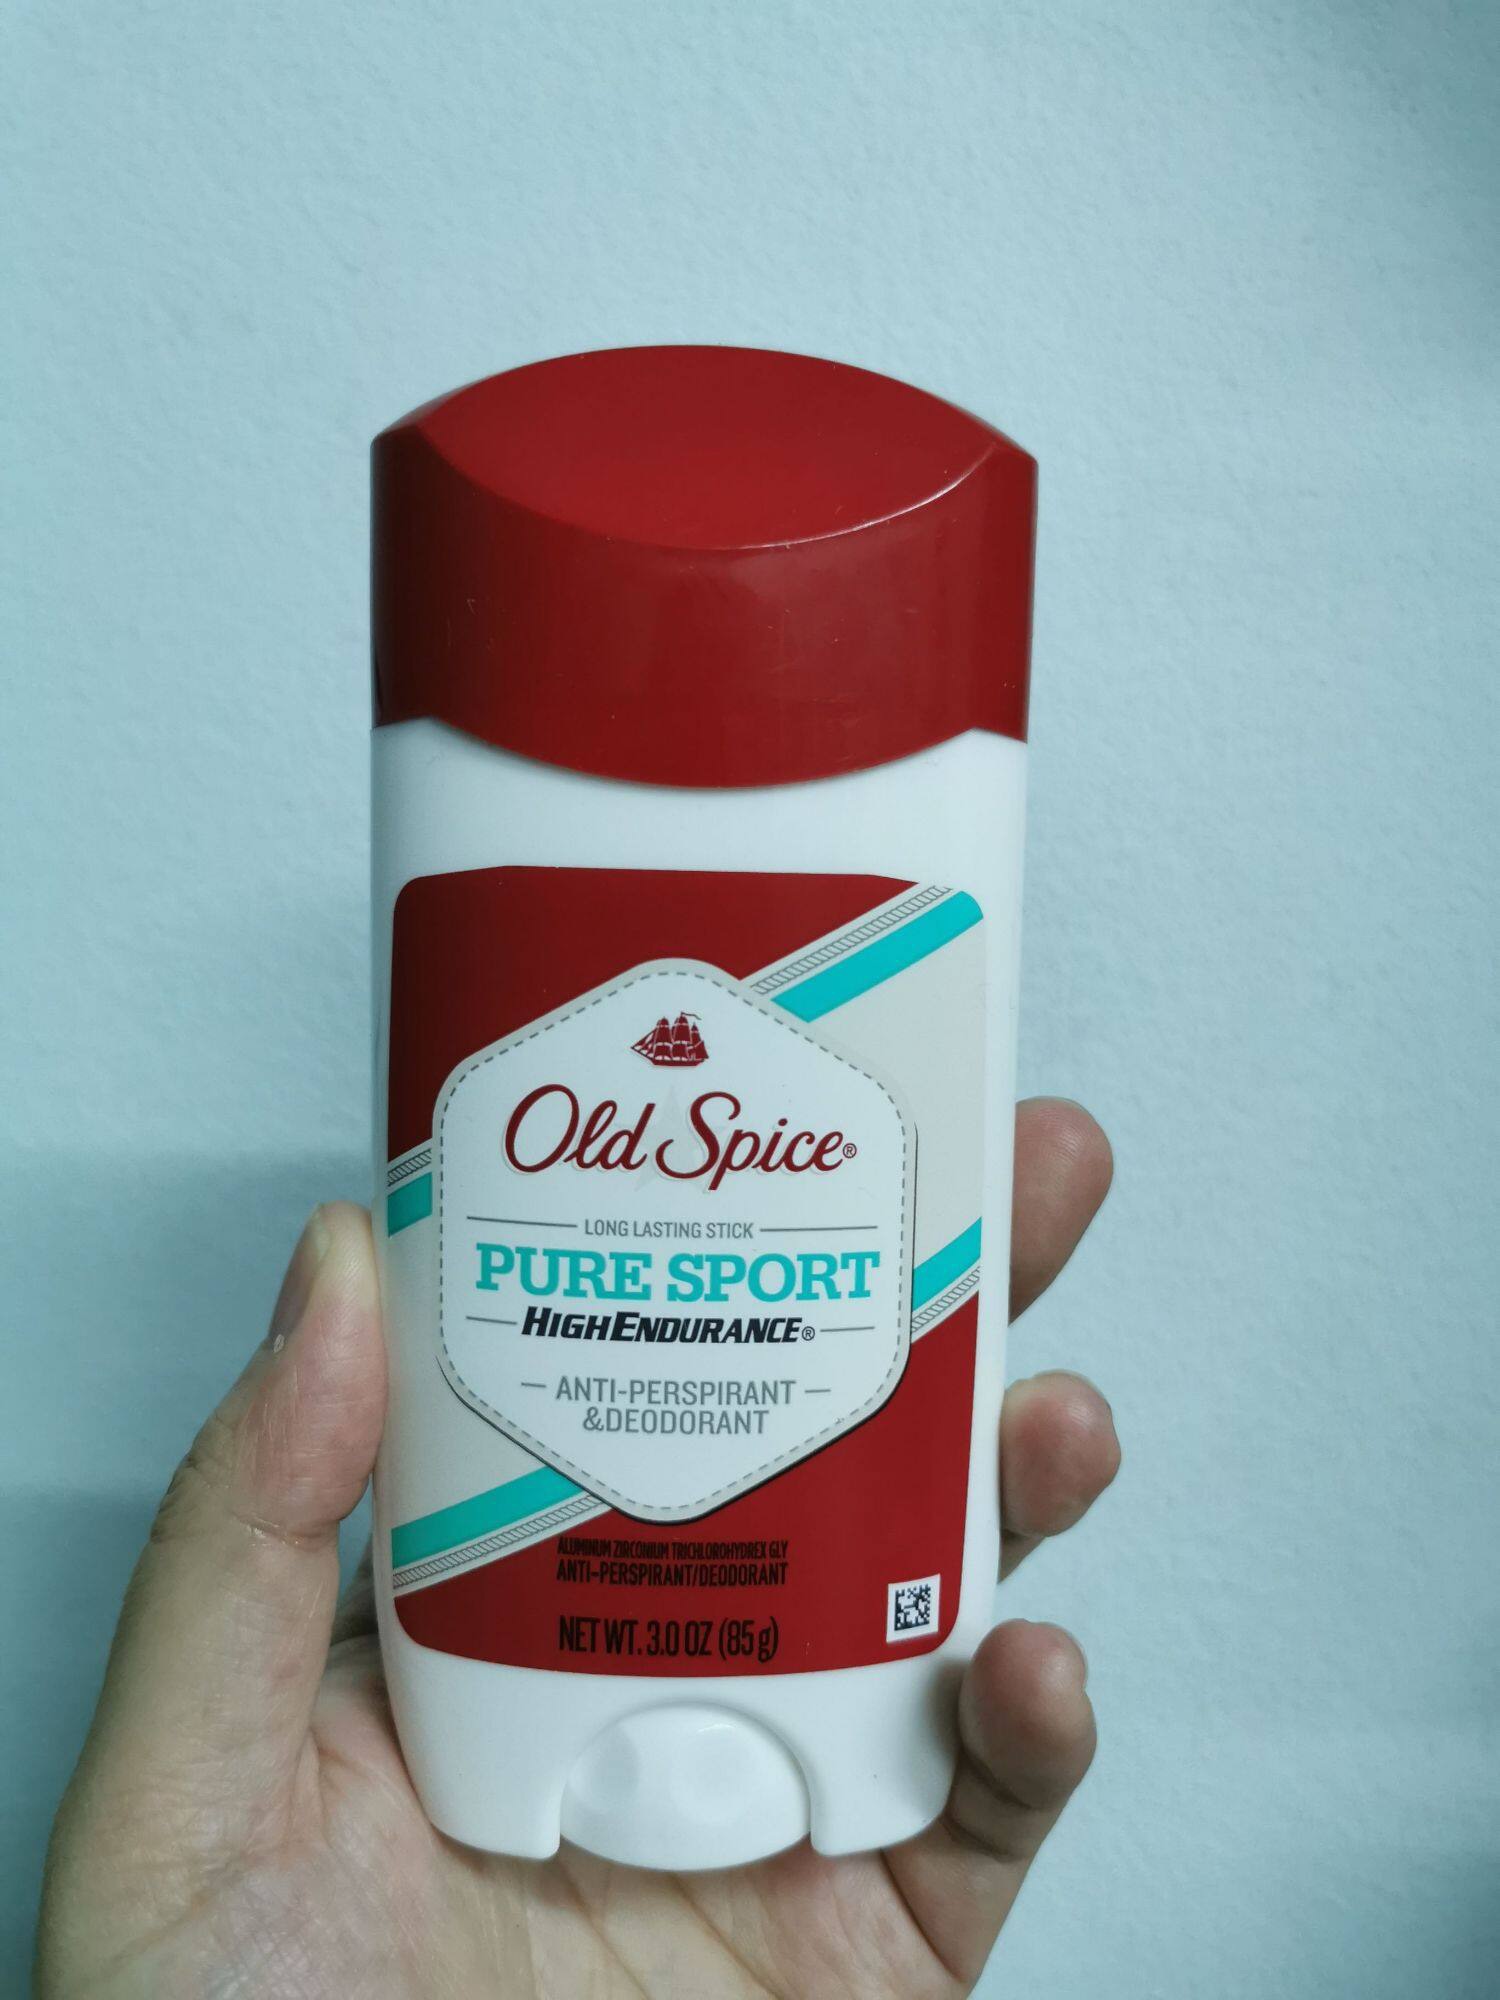 แนะนำ (Exp.12/2022) Old Spice Long Lasting Stick Pure SportAnti-Perspirant & Deodorant 85g